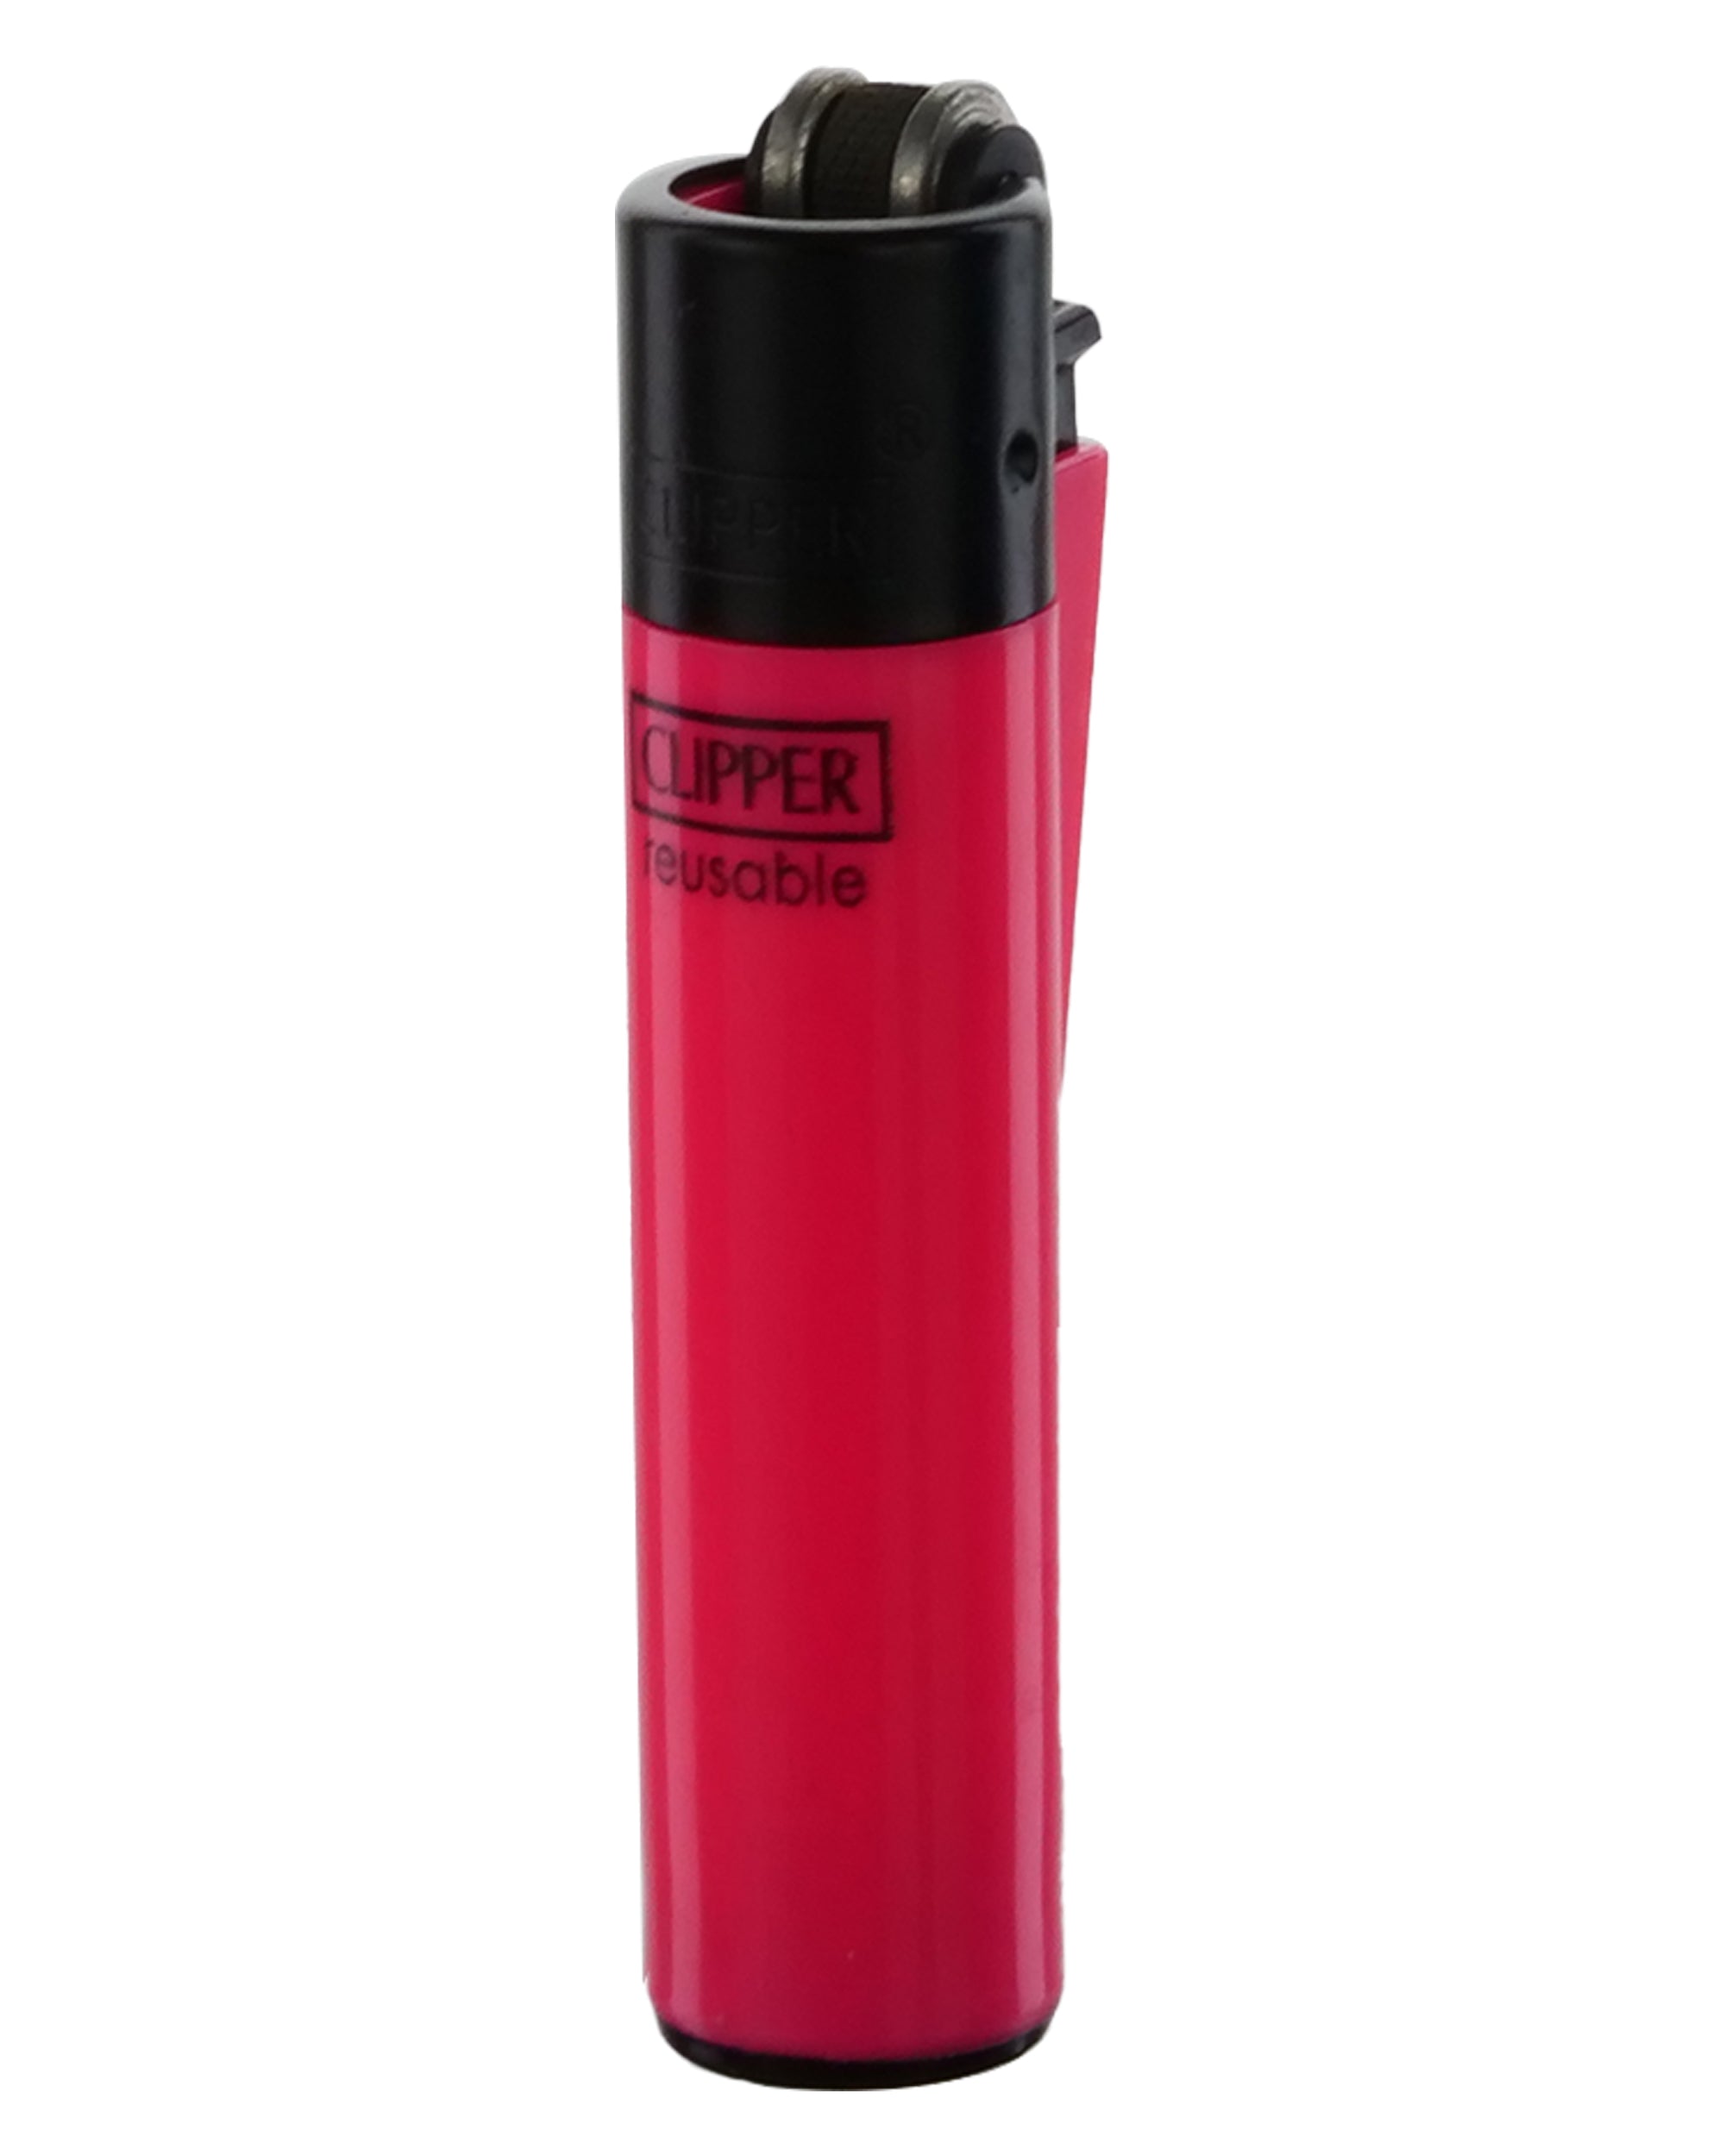 Clipper Micro Lighter